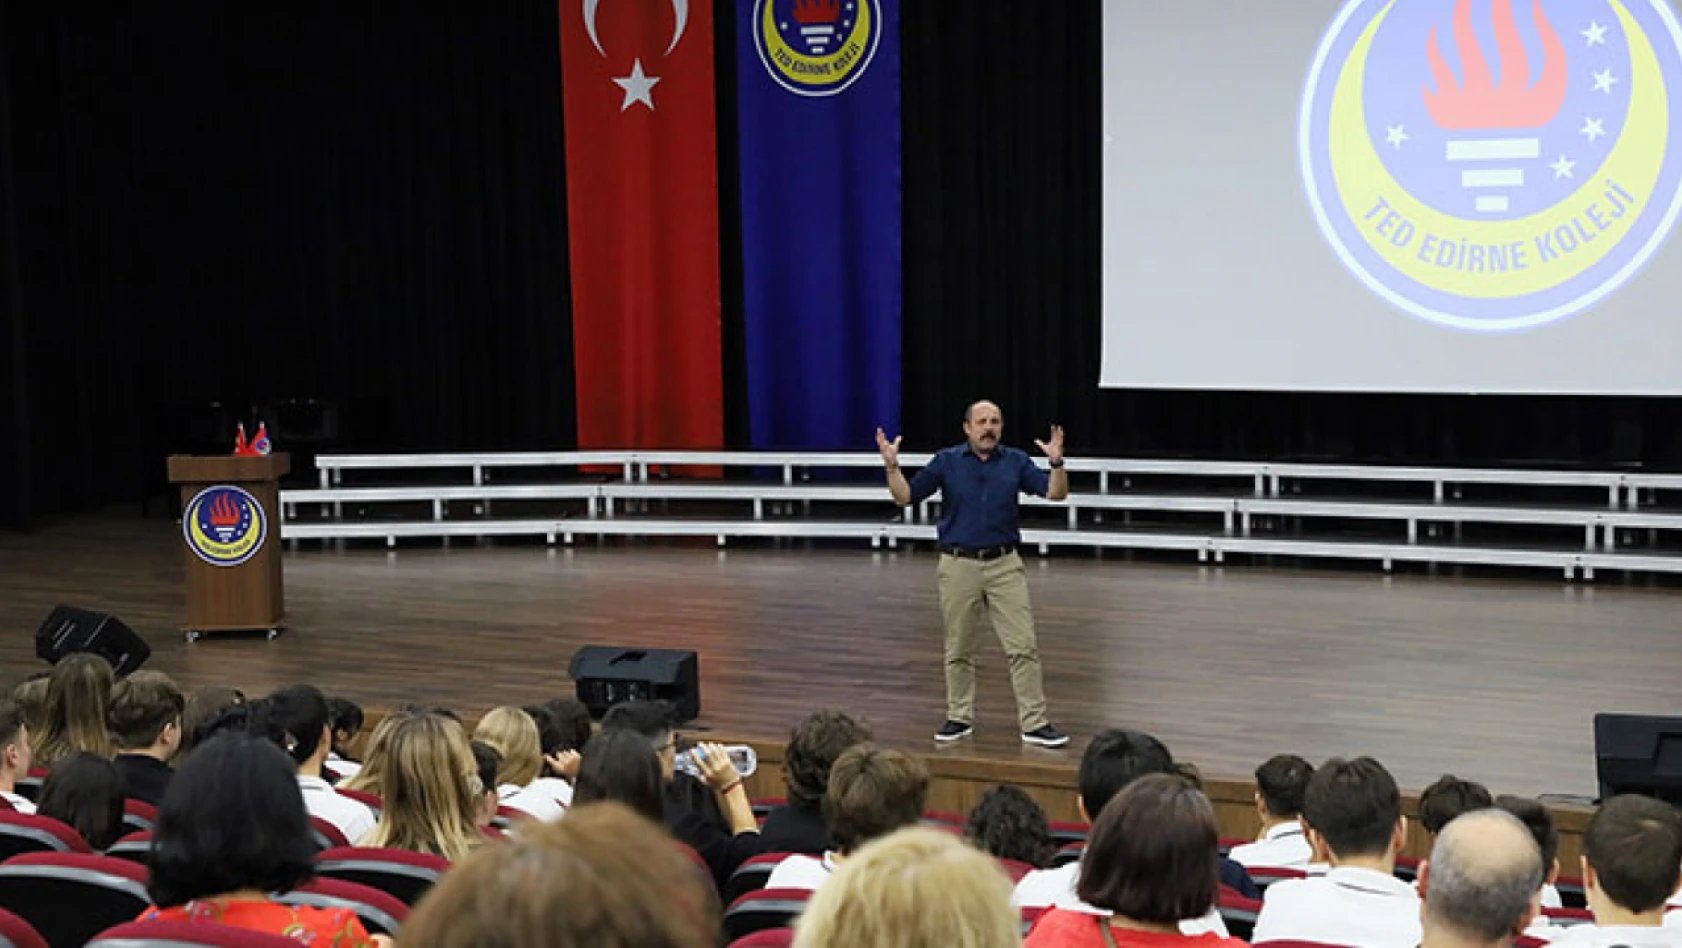 TED Edirne Koleji'nde Liseye Merhaba toplantısı düzenlendi